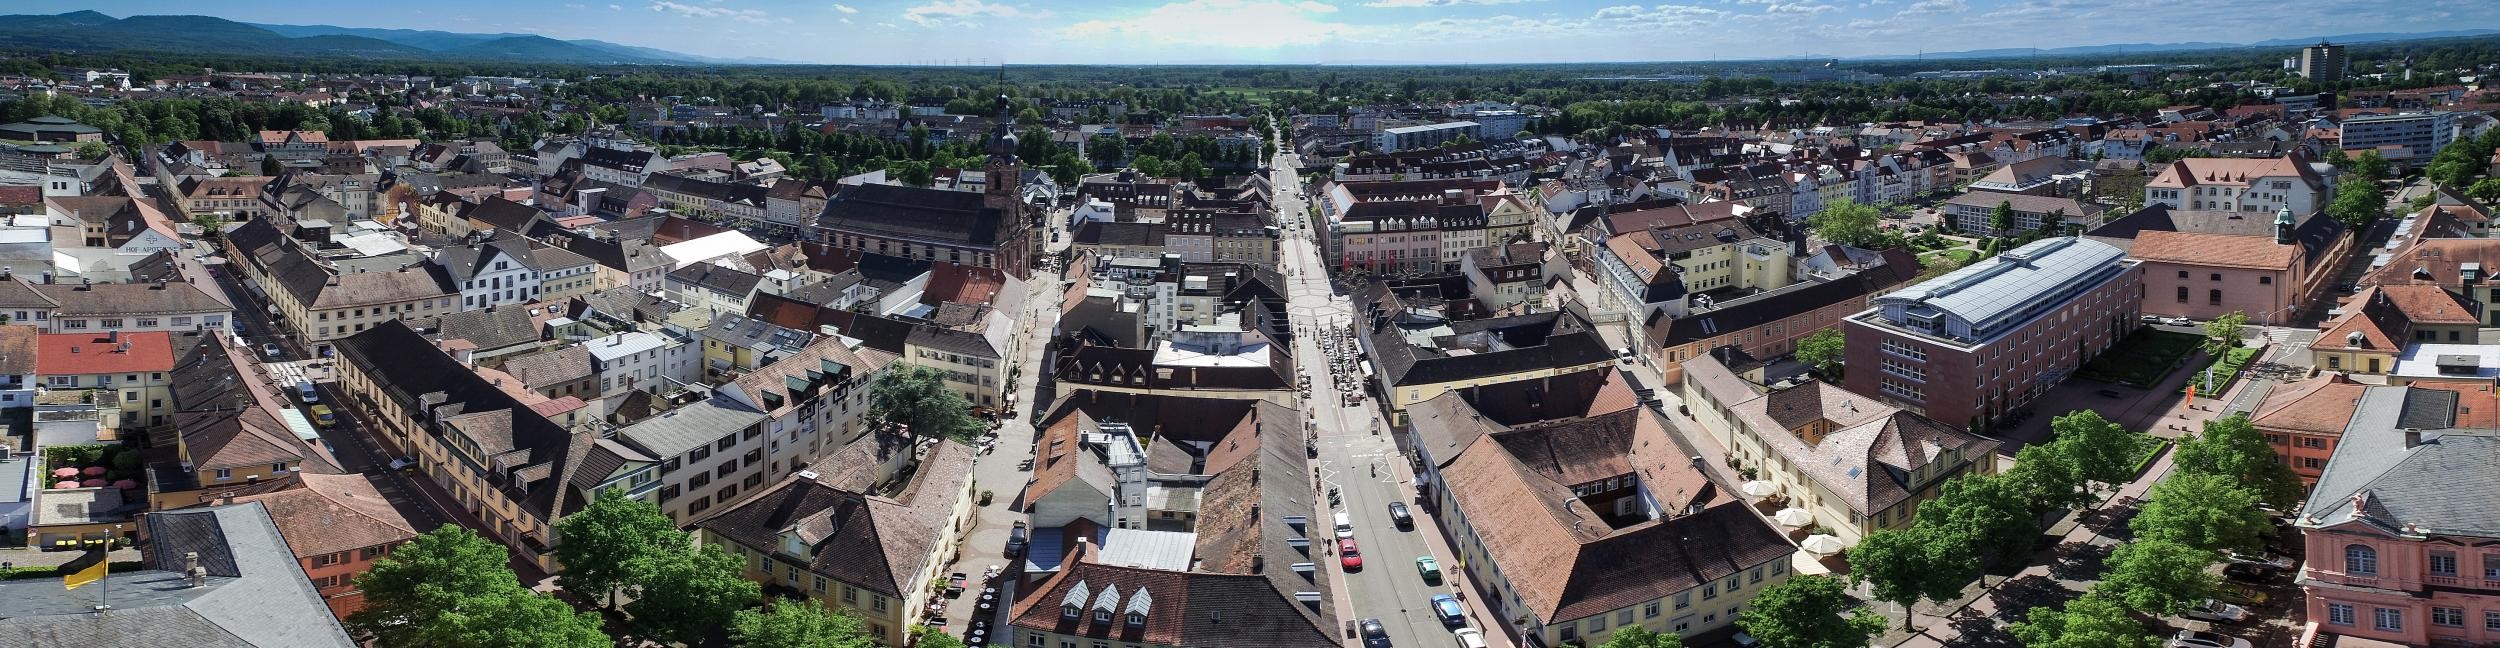 Une vue aérienne montre le centre-ville de Rastatt vu d'en haut.